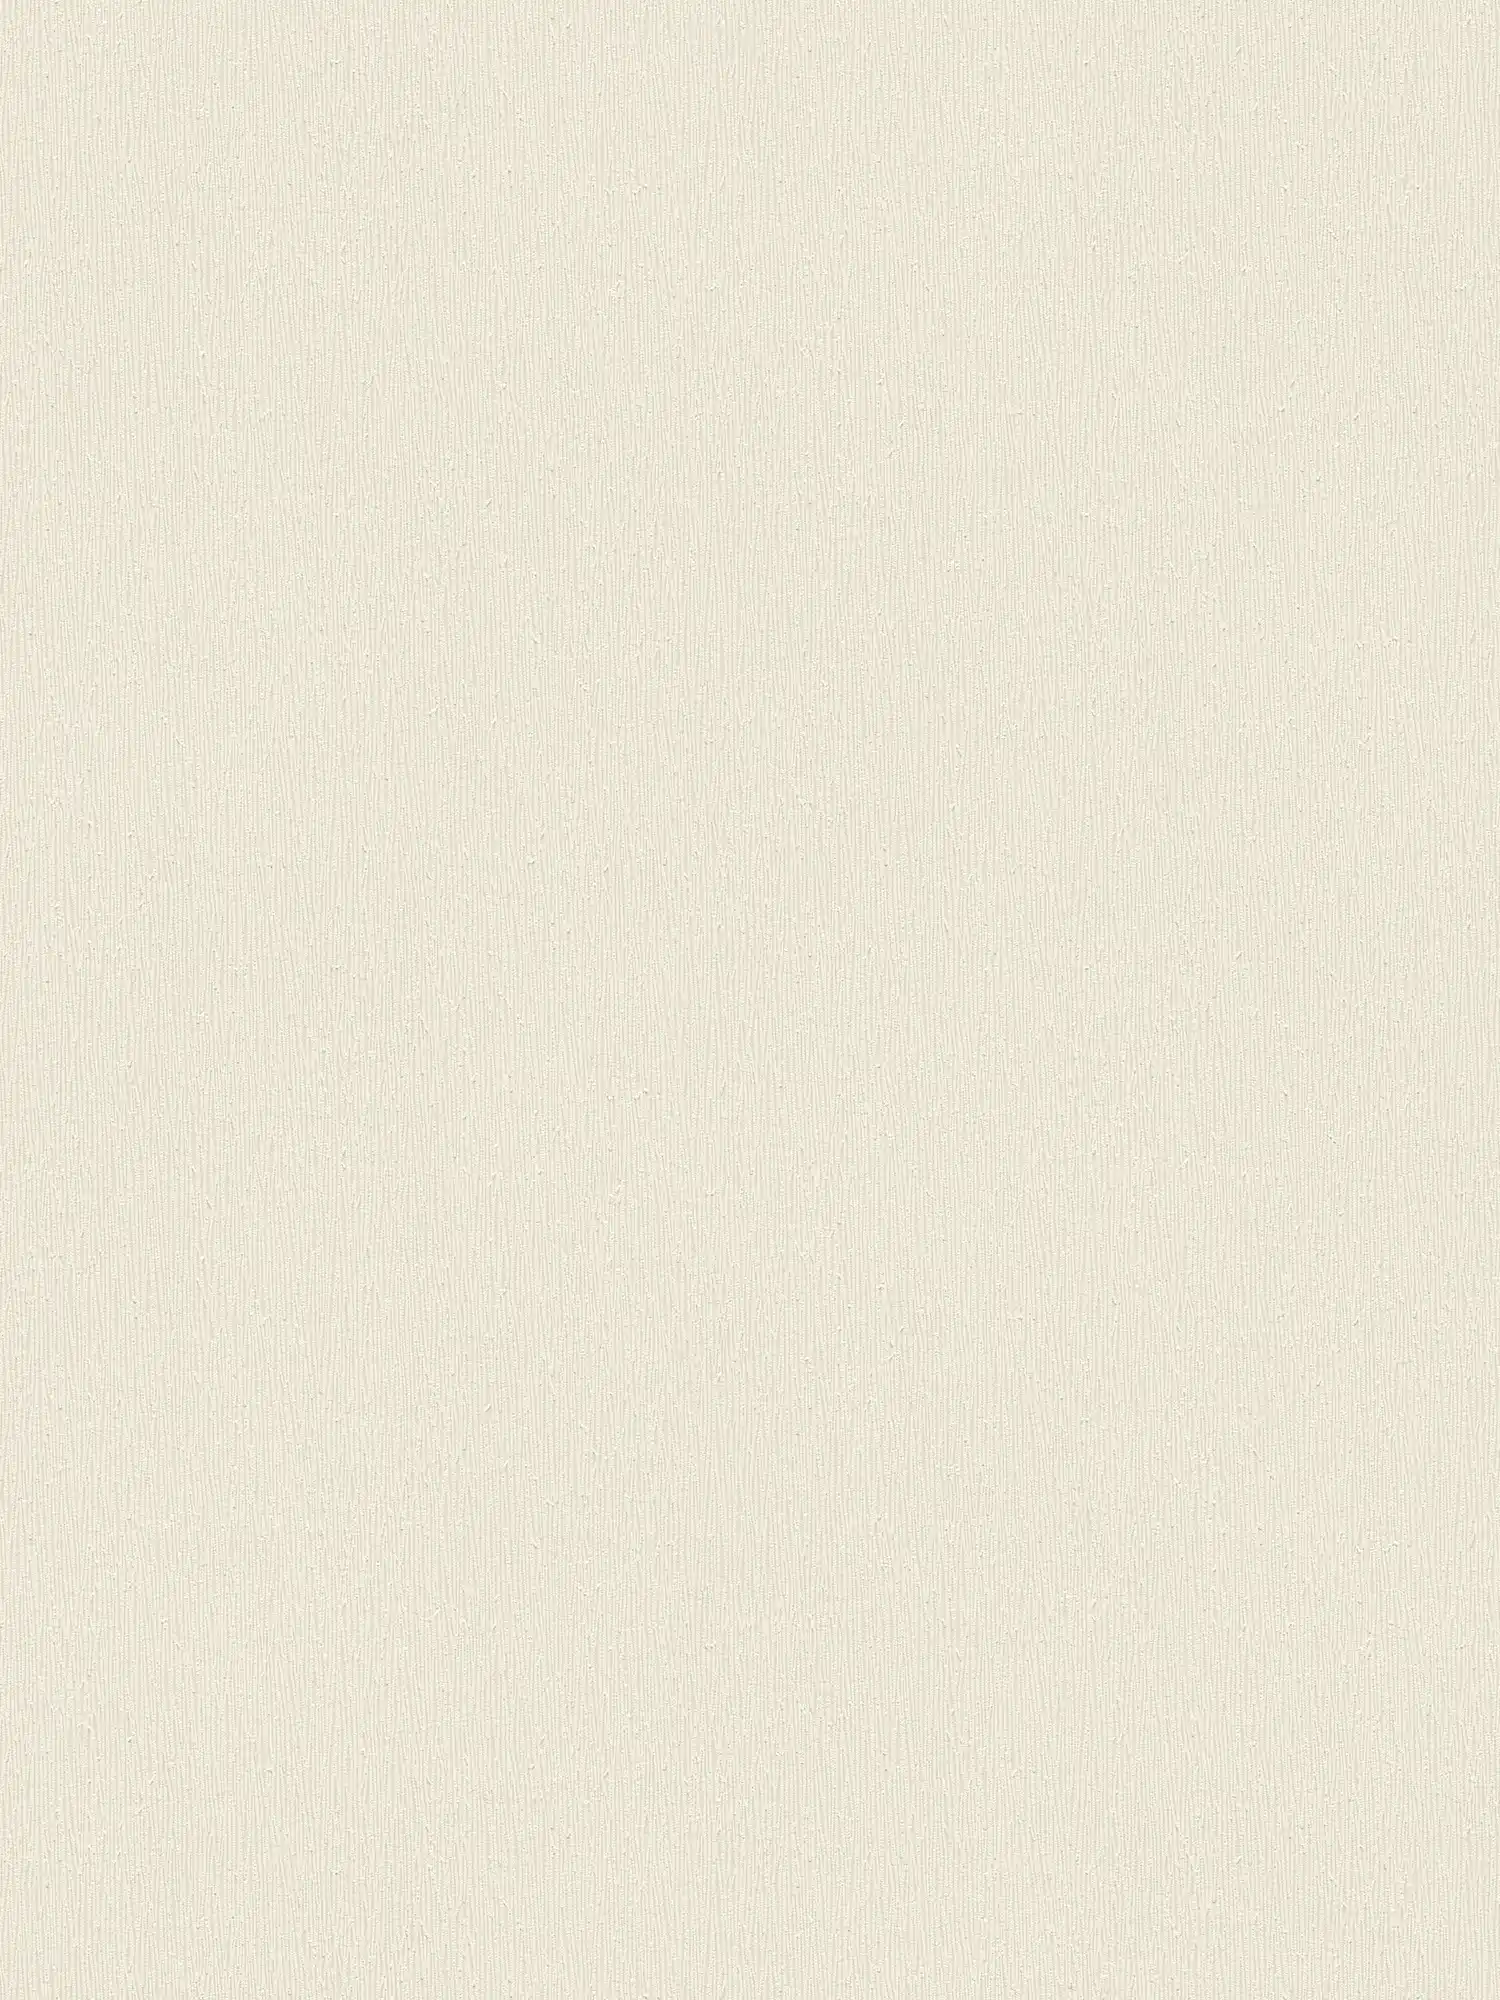 Cream non-woven wallpaper with monochrome texture design - cream, white
